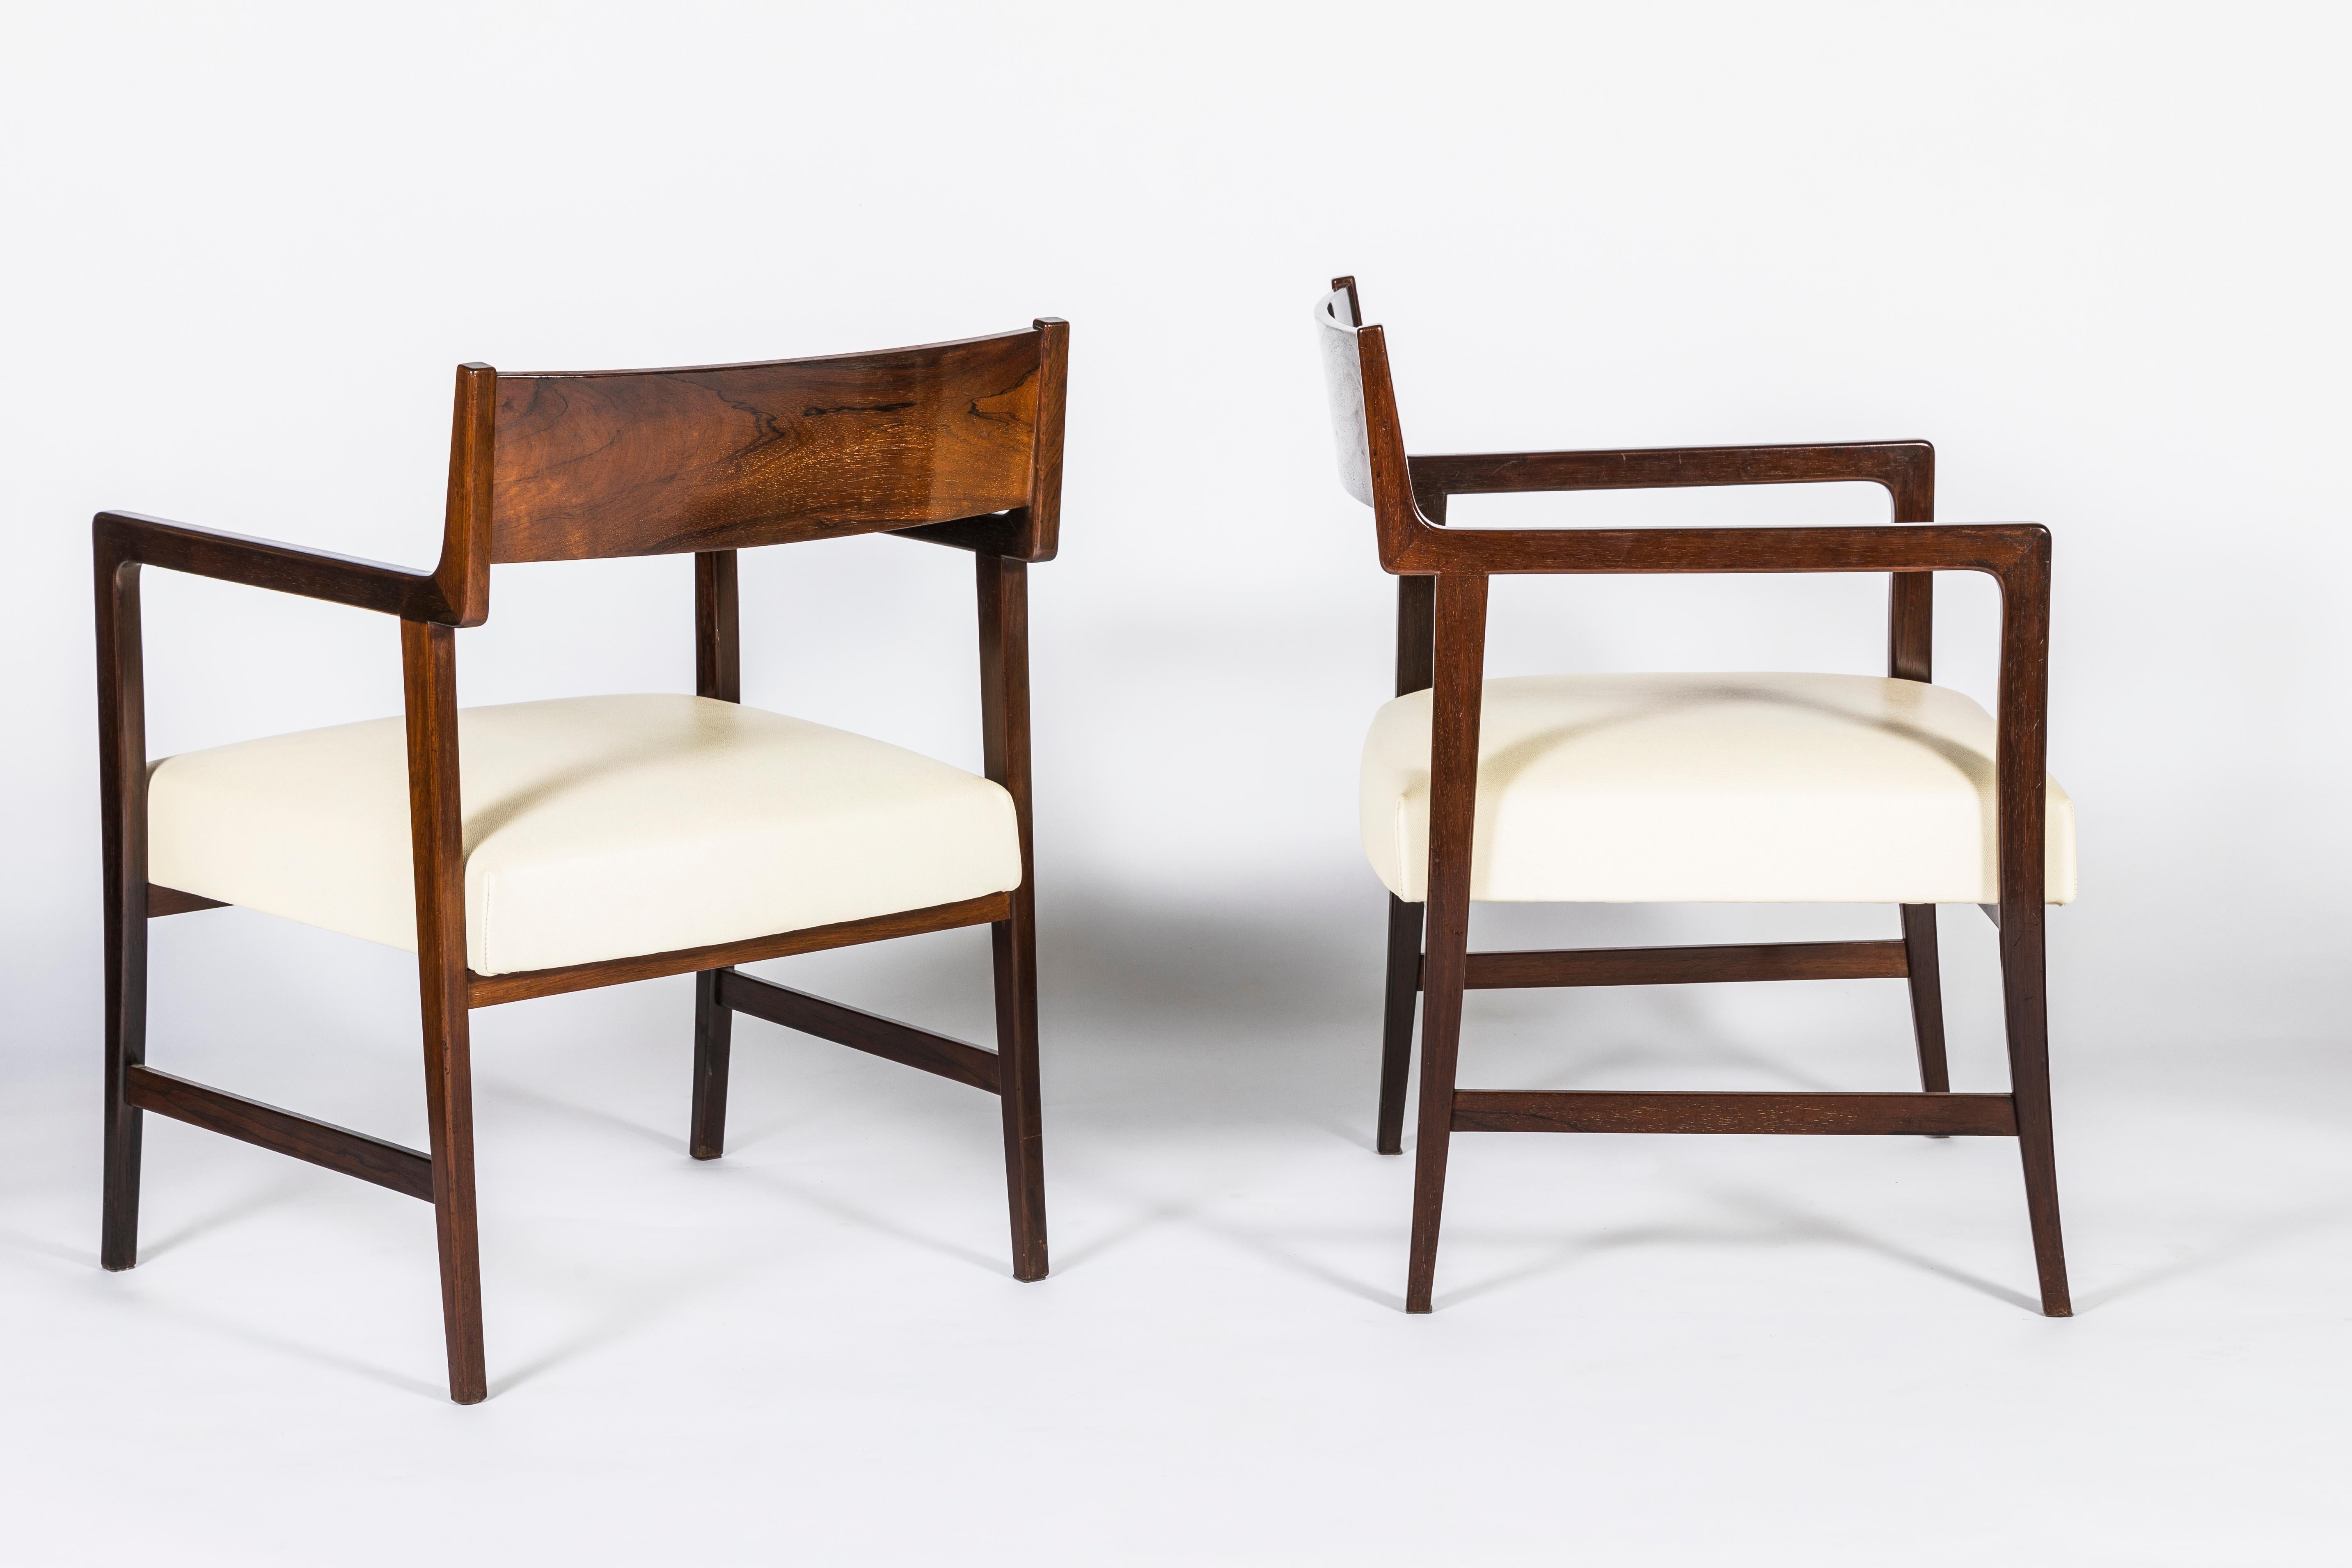 Paar Sessel aus massivem Nussbaumholz von Joaquin Tenreiro, 1960
Geformtes Holz mit einer großen Qualität des Holzes: Dichte und tiefe Maserung. 
Subtil und geometrisch geschwungen, inspiriert vom dänischen Mid Century Design mit den großen